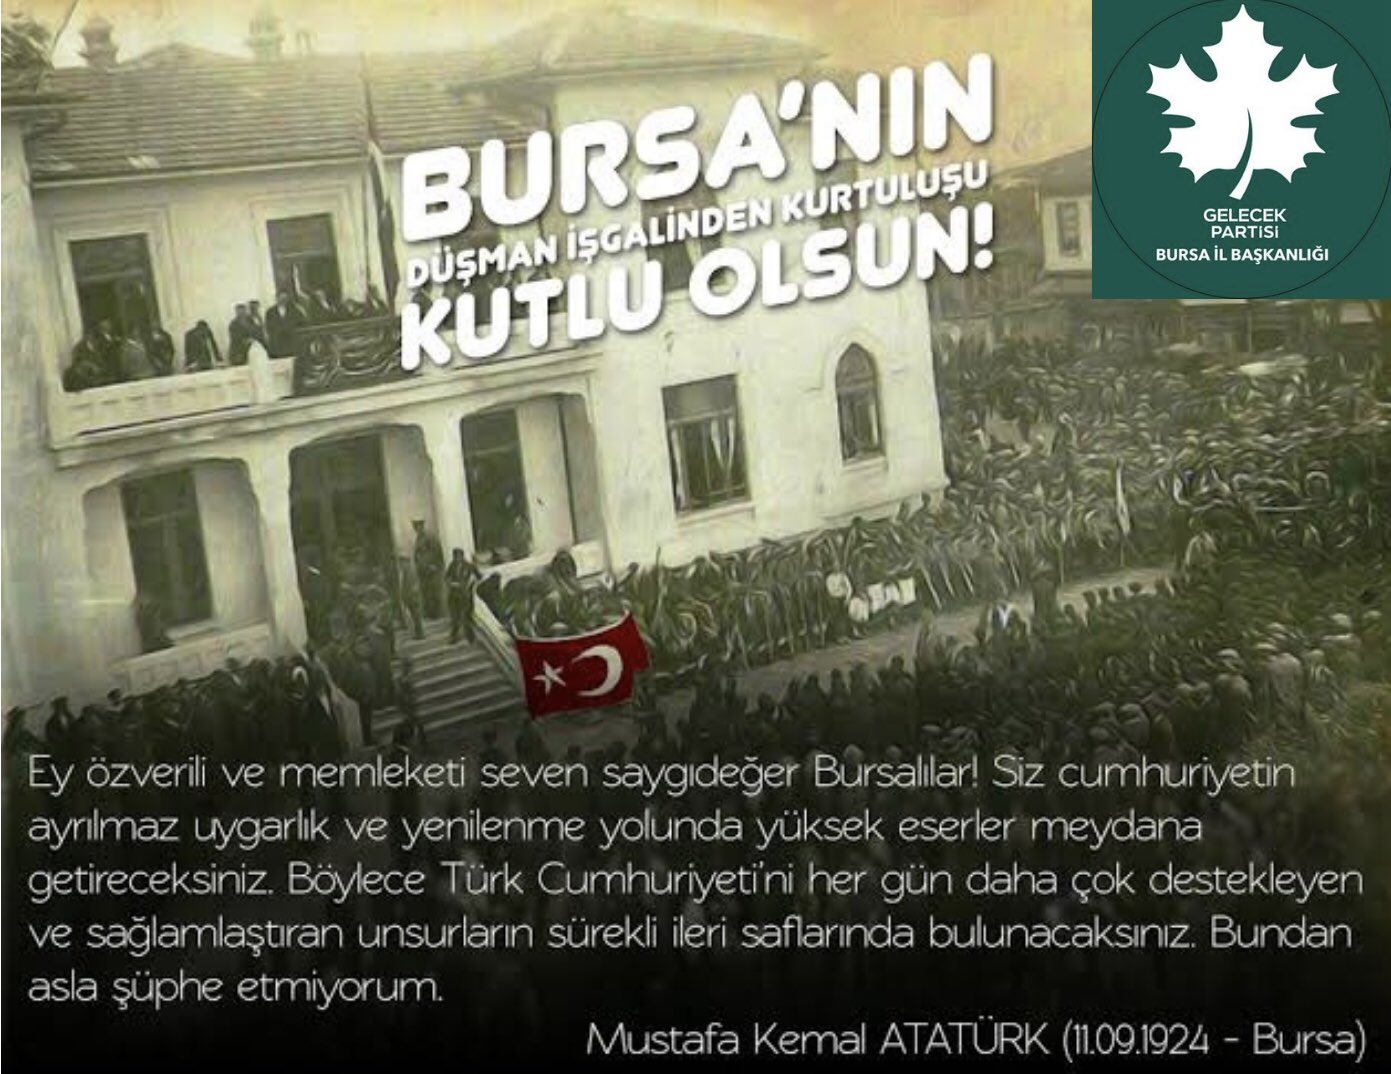 Bursa, sahip olduğu doğal güzellikler ve mükemmellik ile rahat ve şenlikli bir memlekettir.”( Mustafa Kemal Atatürk) 11 Eylül Bursa’nın kurtuluşu kutlu olsun